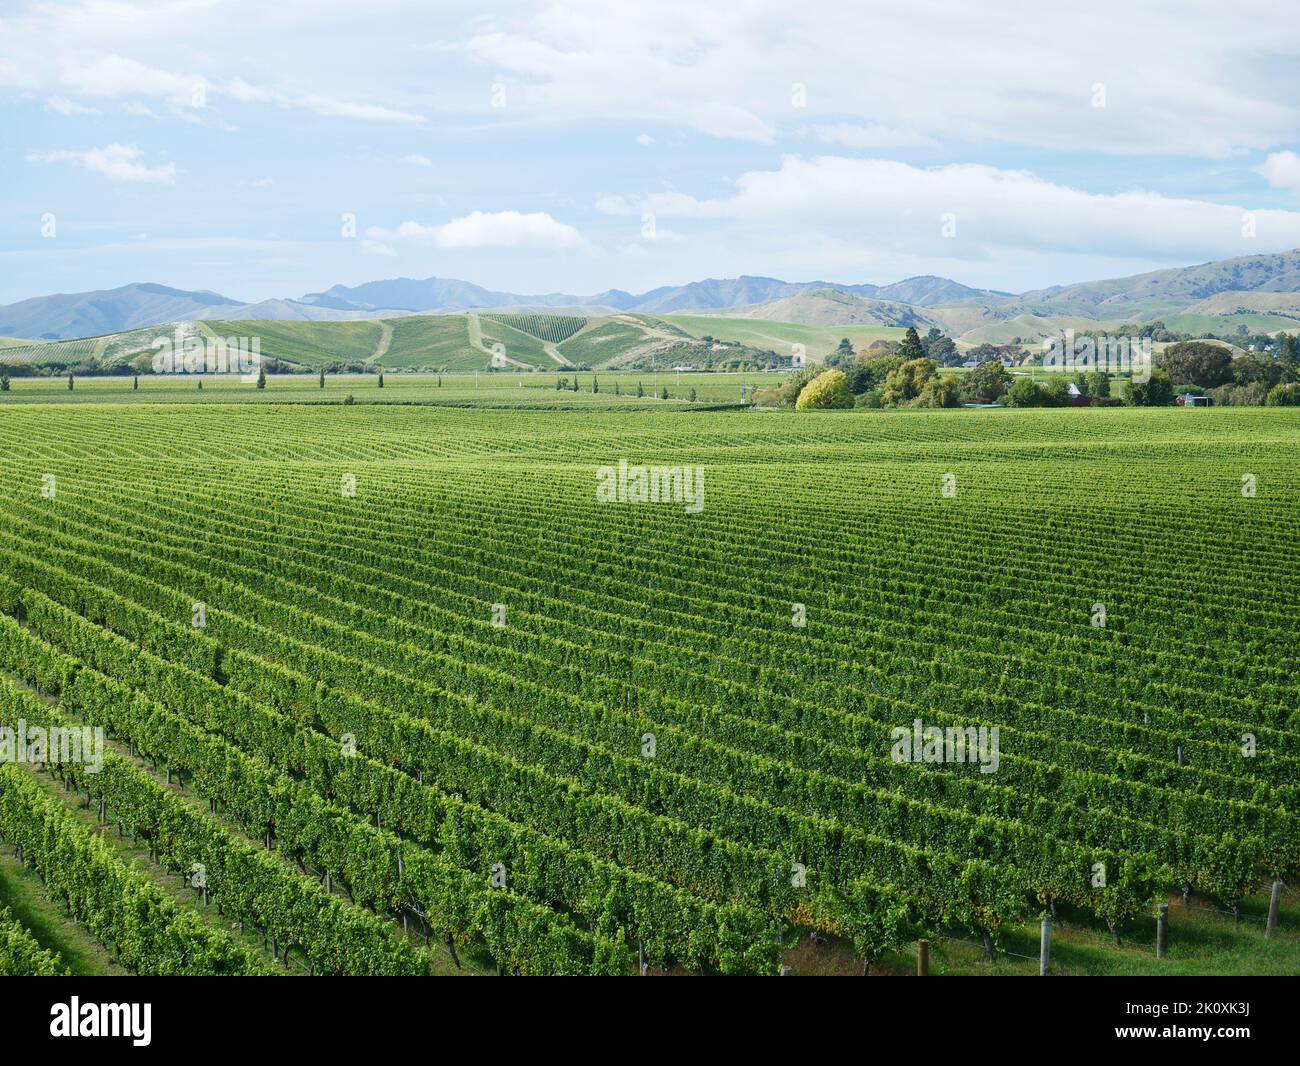 Blick über einen Weinberg in der Region Marlborough - Blenheim South Island Neuseeland Stockfoto